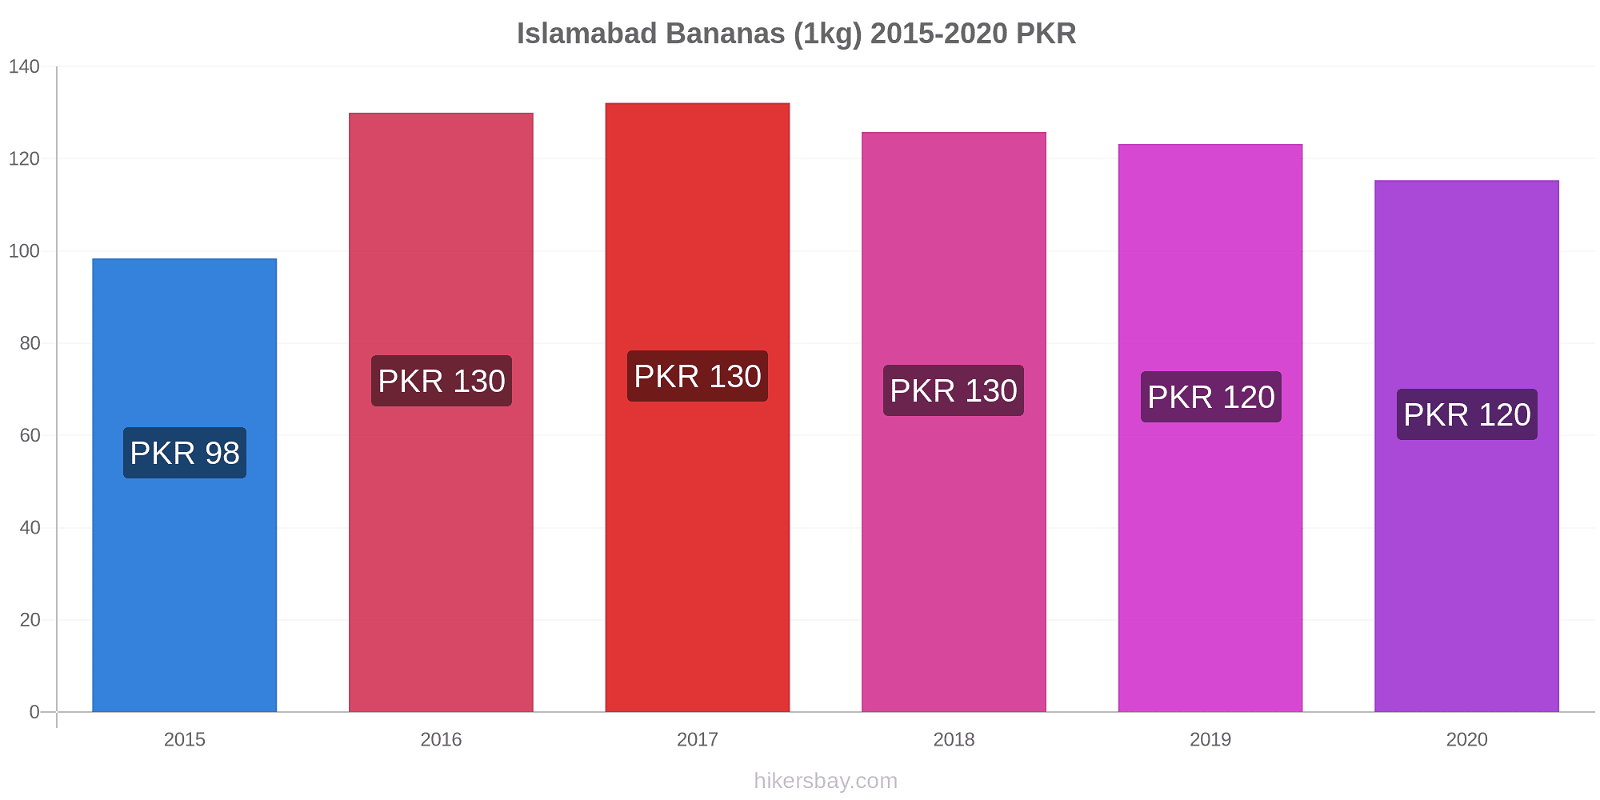 Islamabad variação de preço Banana (1kg) hikersbay.com